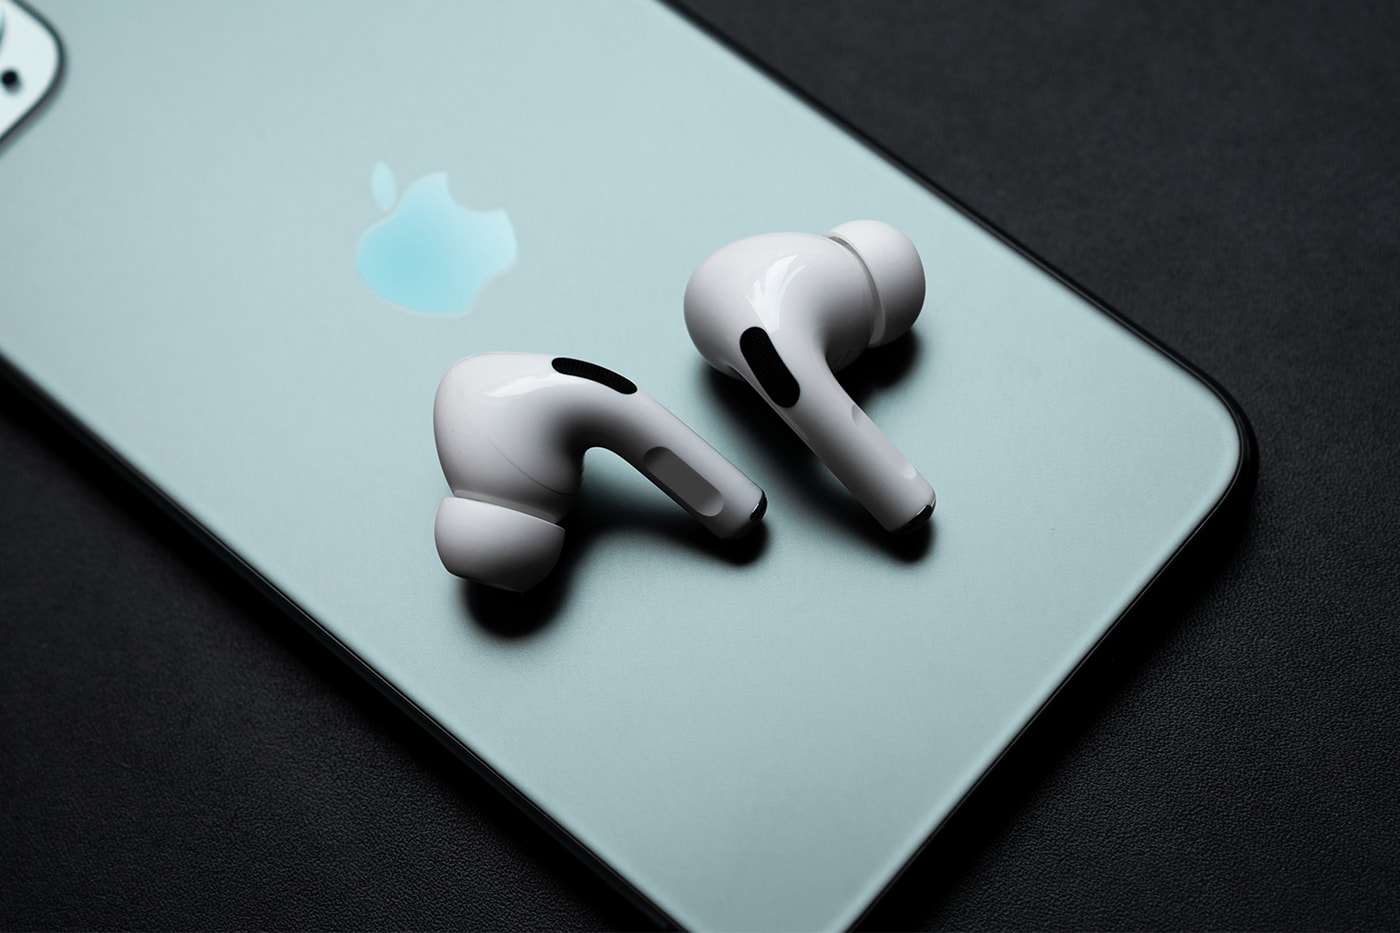 애플 에어팟 3, 오는 9월 중 아이폰 13과 함께 출시된다?, 에어팟 프로, 액티브 노이즈 캔슬링 기능